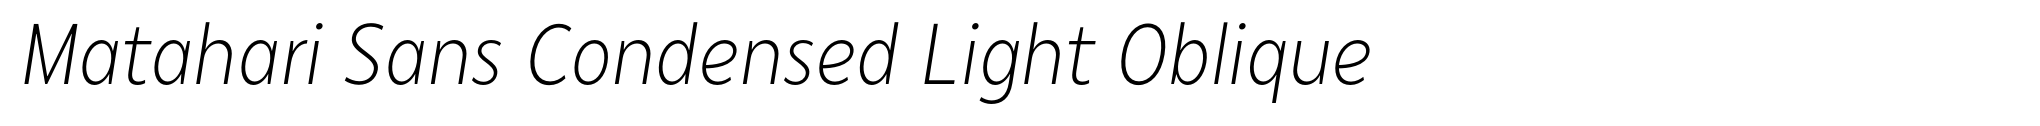 Matahari Sans Condensed Light Oblique image